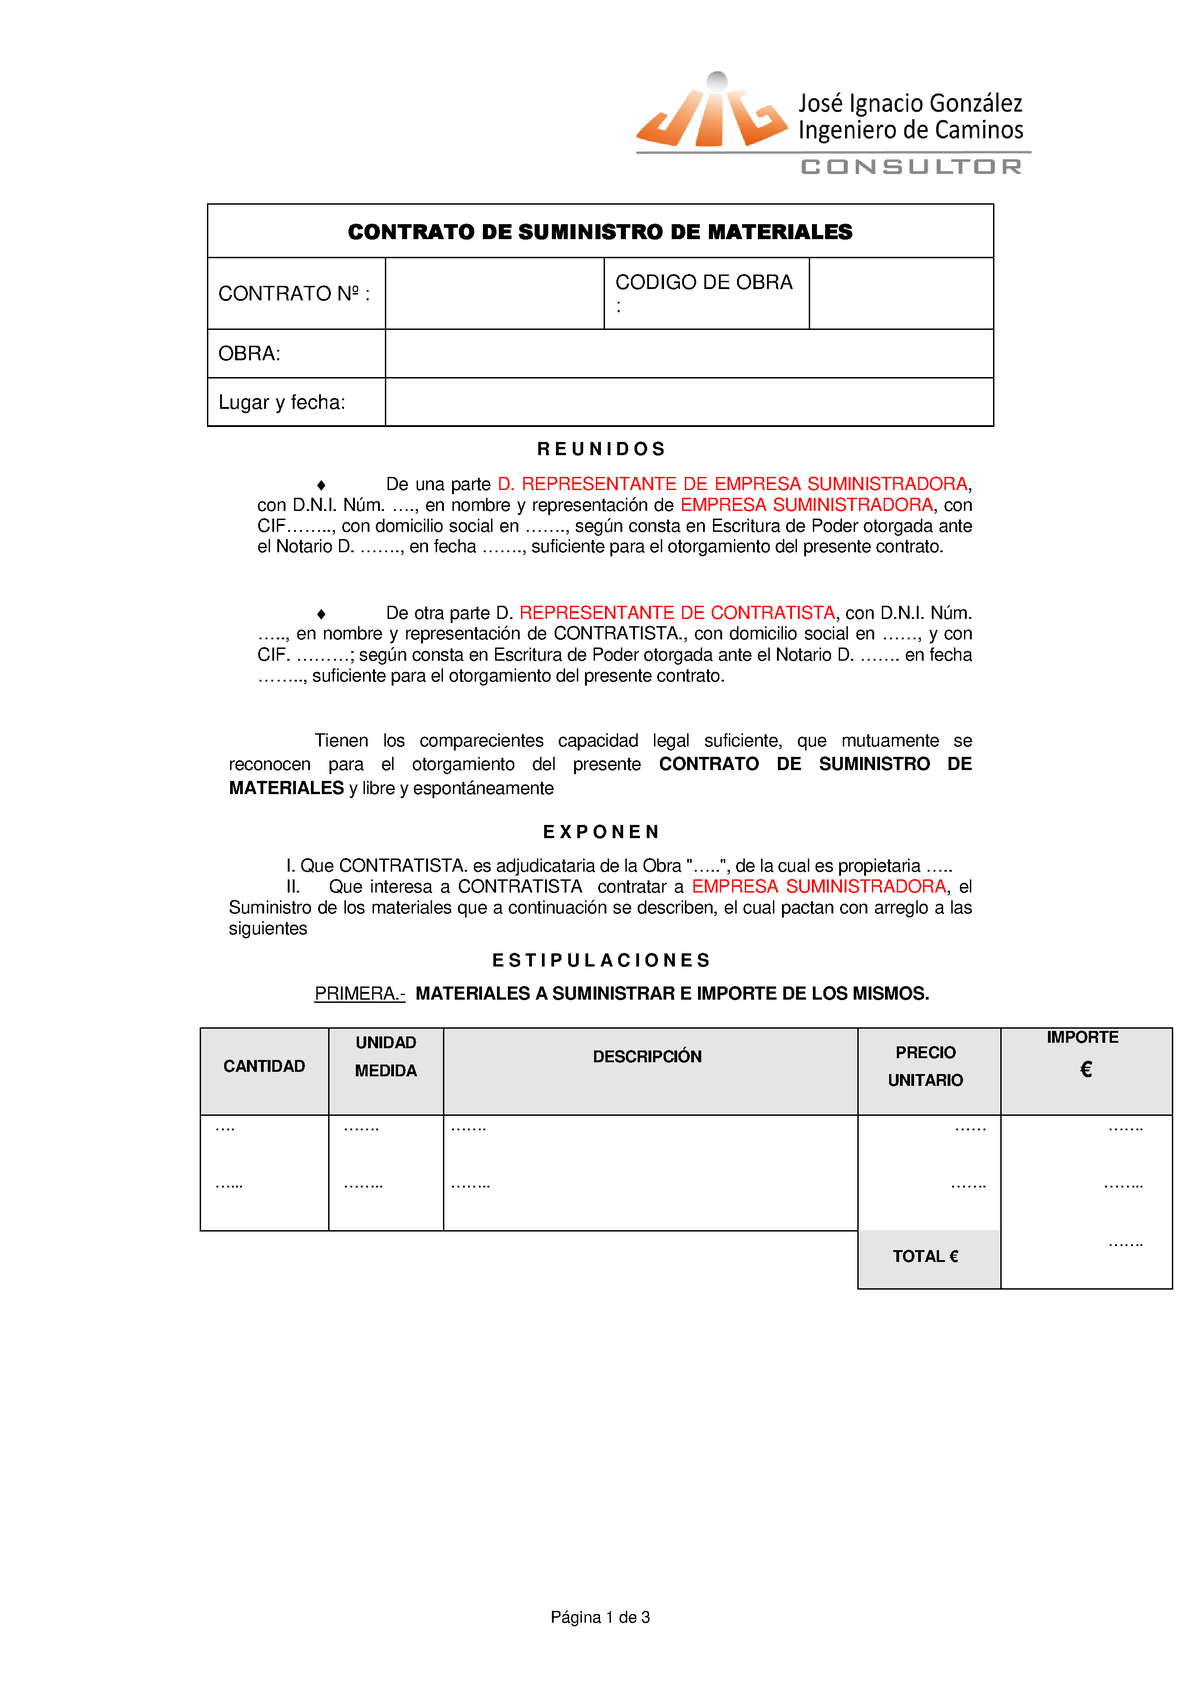 Modelo-contrato-suministro de materiales - Página 1 de 3 CONTRATO DE  CONTRATO DE CONTRATO DE - Studocu